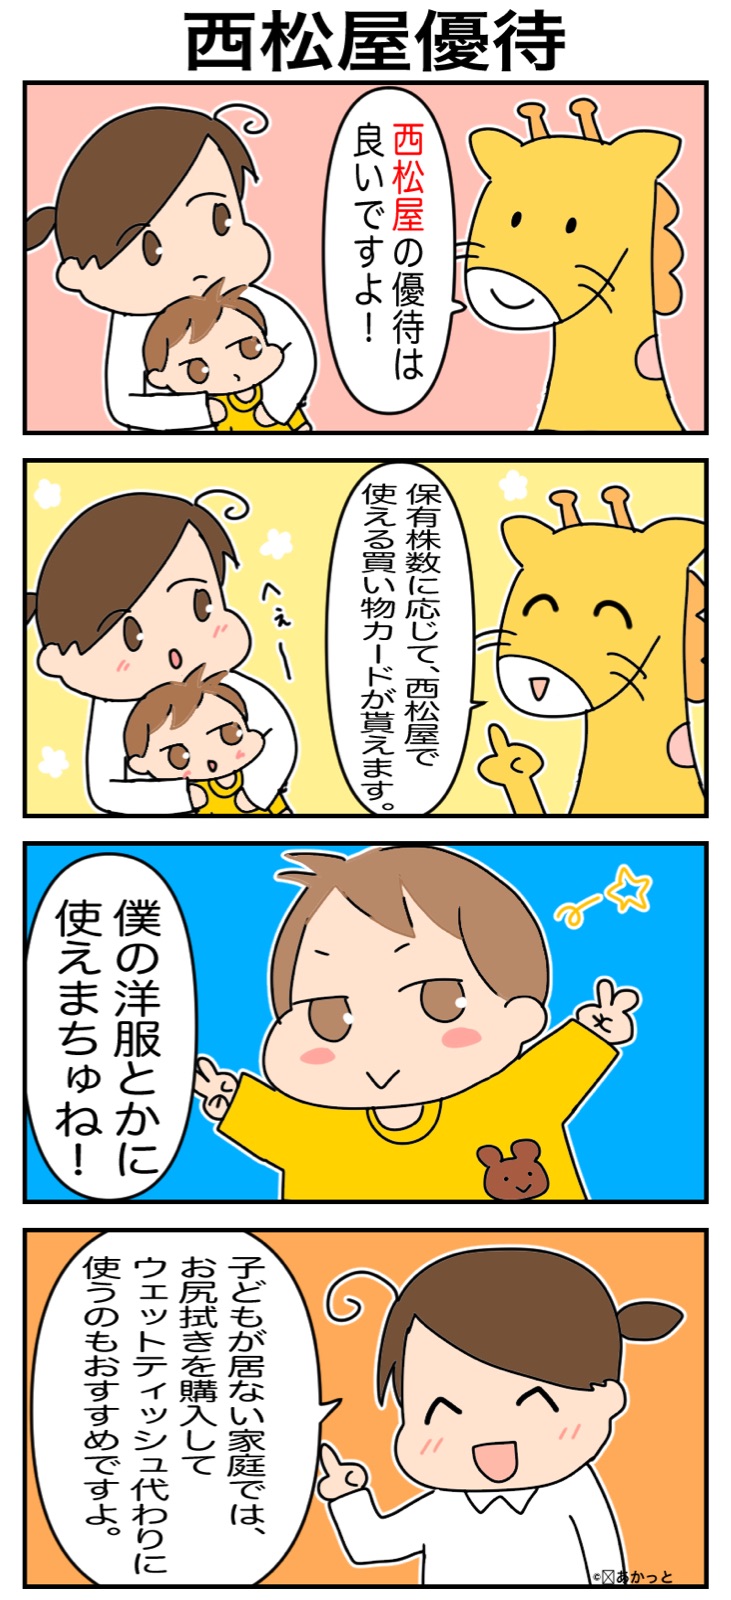 西松屋(7545)株主優待についての解説漫画